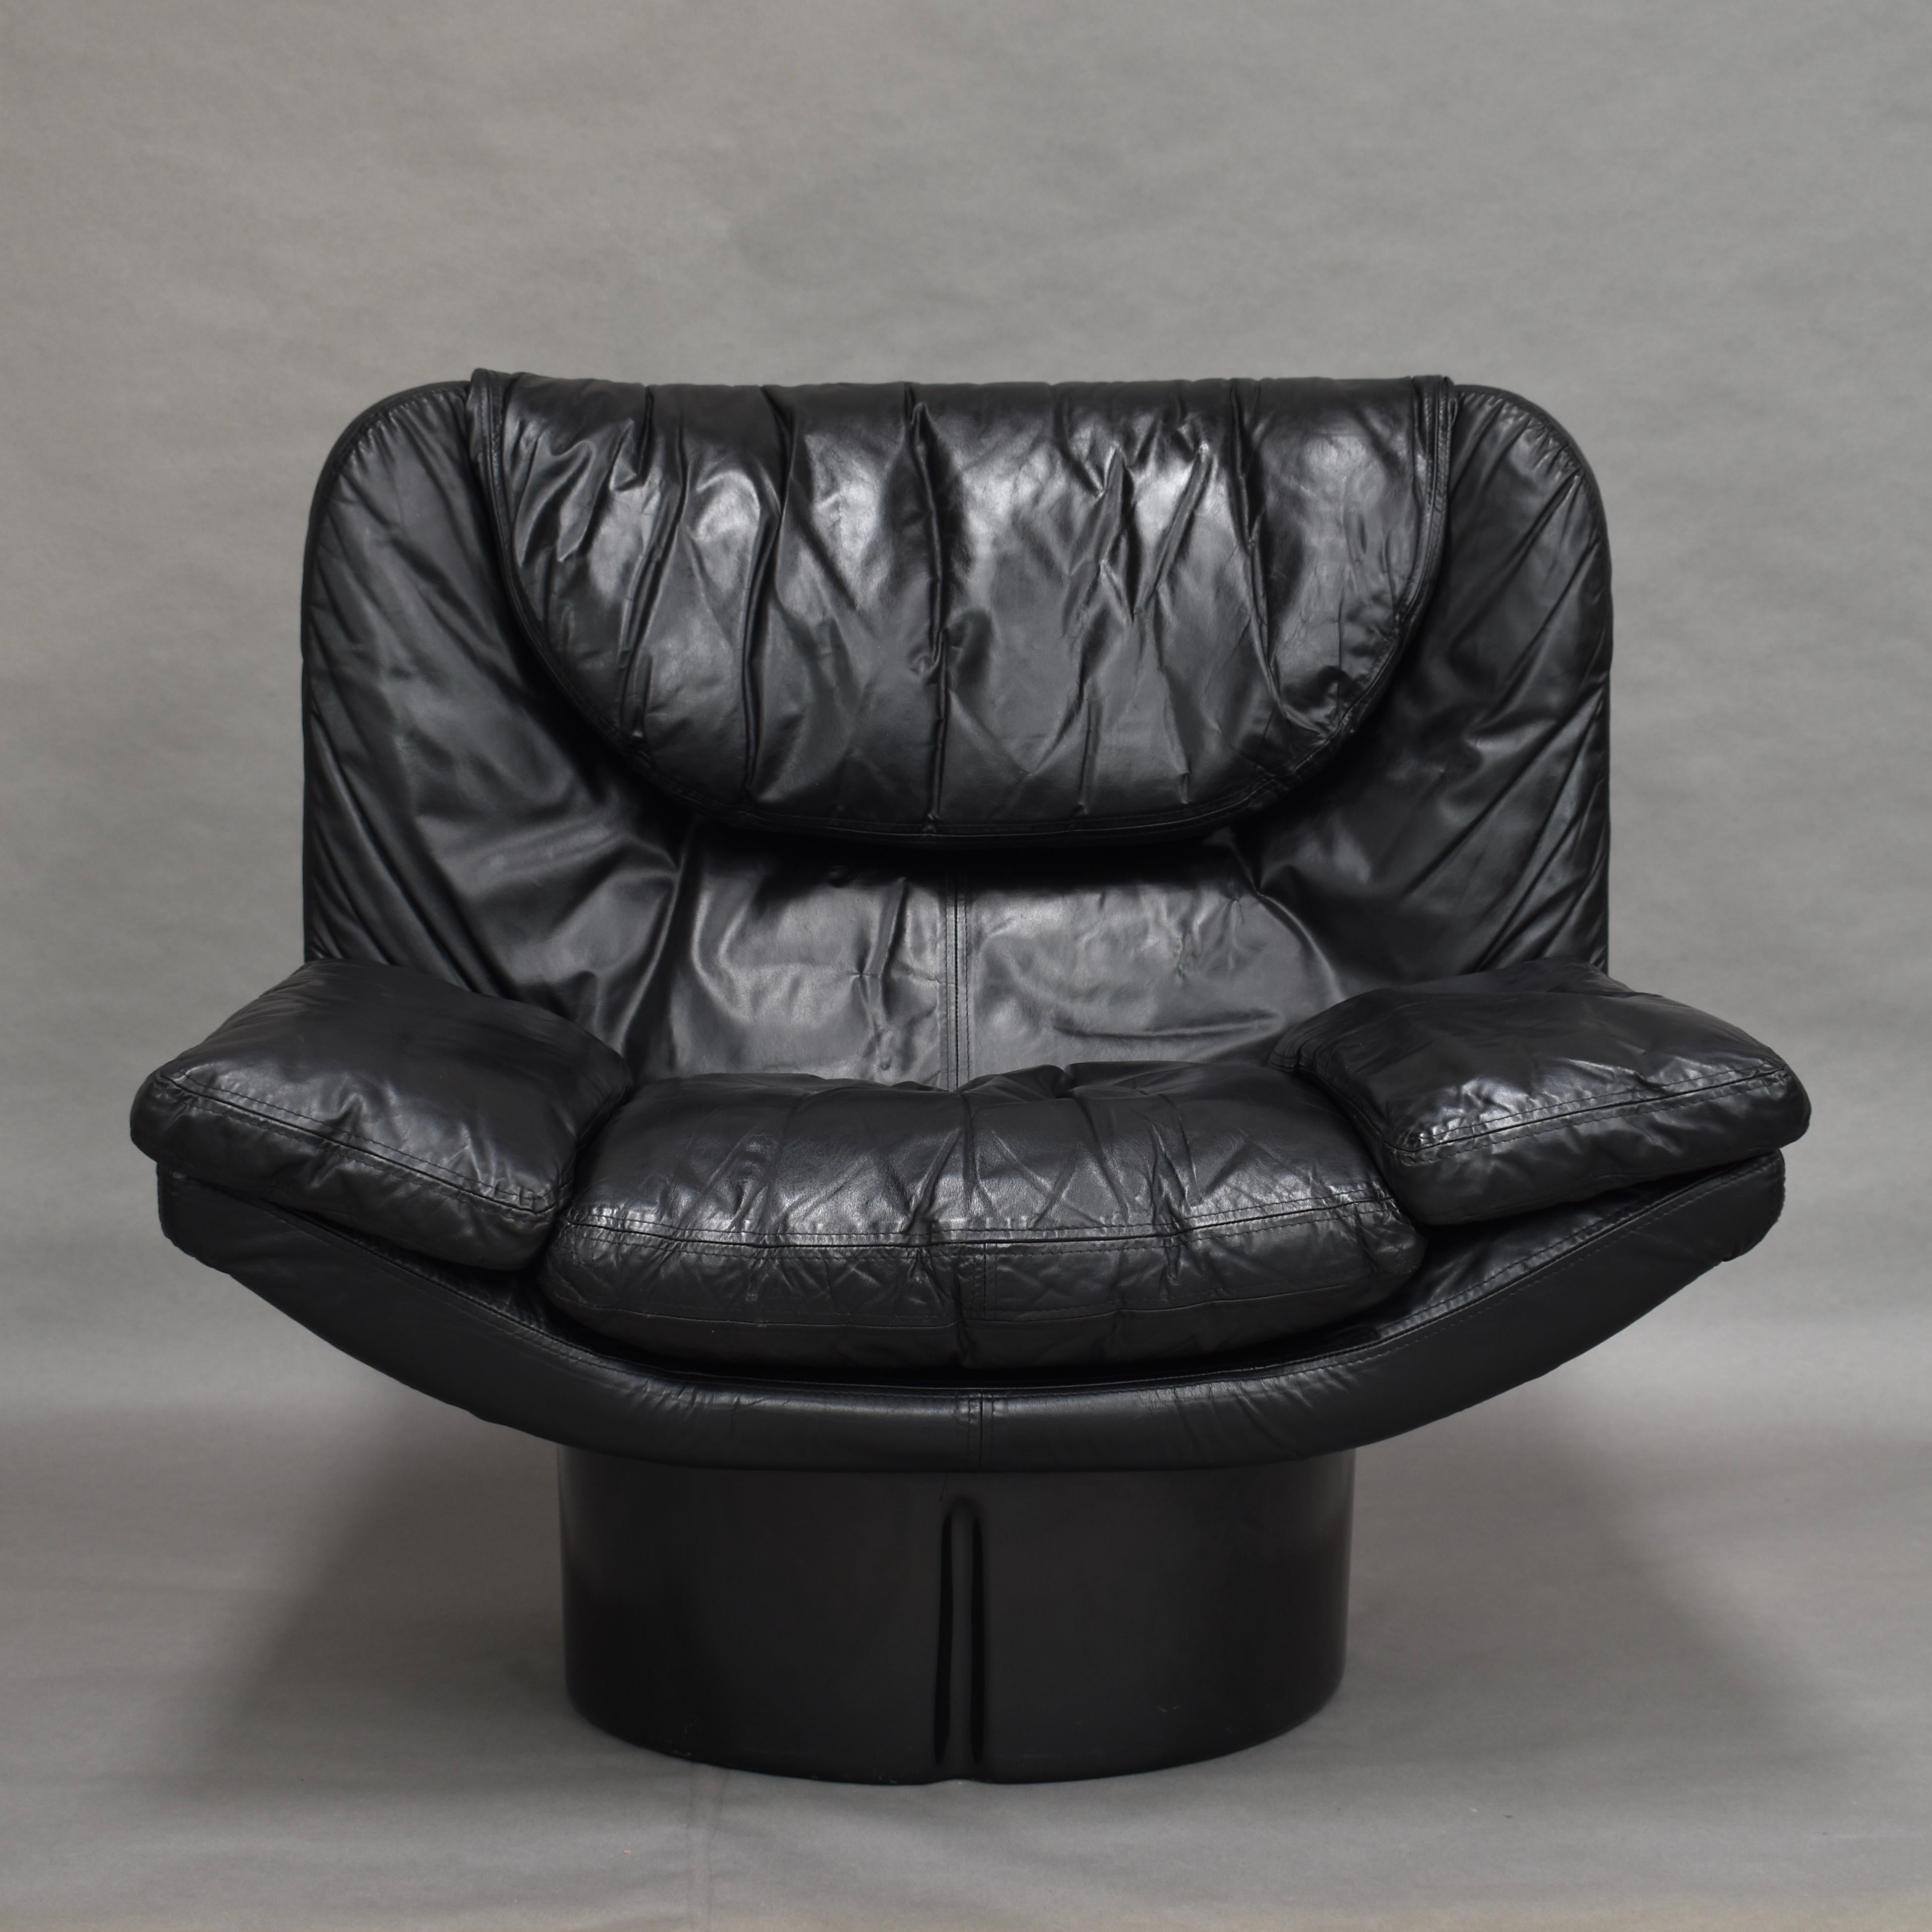 Modell Il Poltrone Sessel von T. Ammanti & G.P. Vitelli für Comfort, 1973.

Dieser Stuhl gehört zur Serie 175 von Comfort und ist ein Modell in der Linie des Elda-Stuhls von Joe Colombo, der ebenfalls von Comfort hergestellt wird. Er ist aus